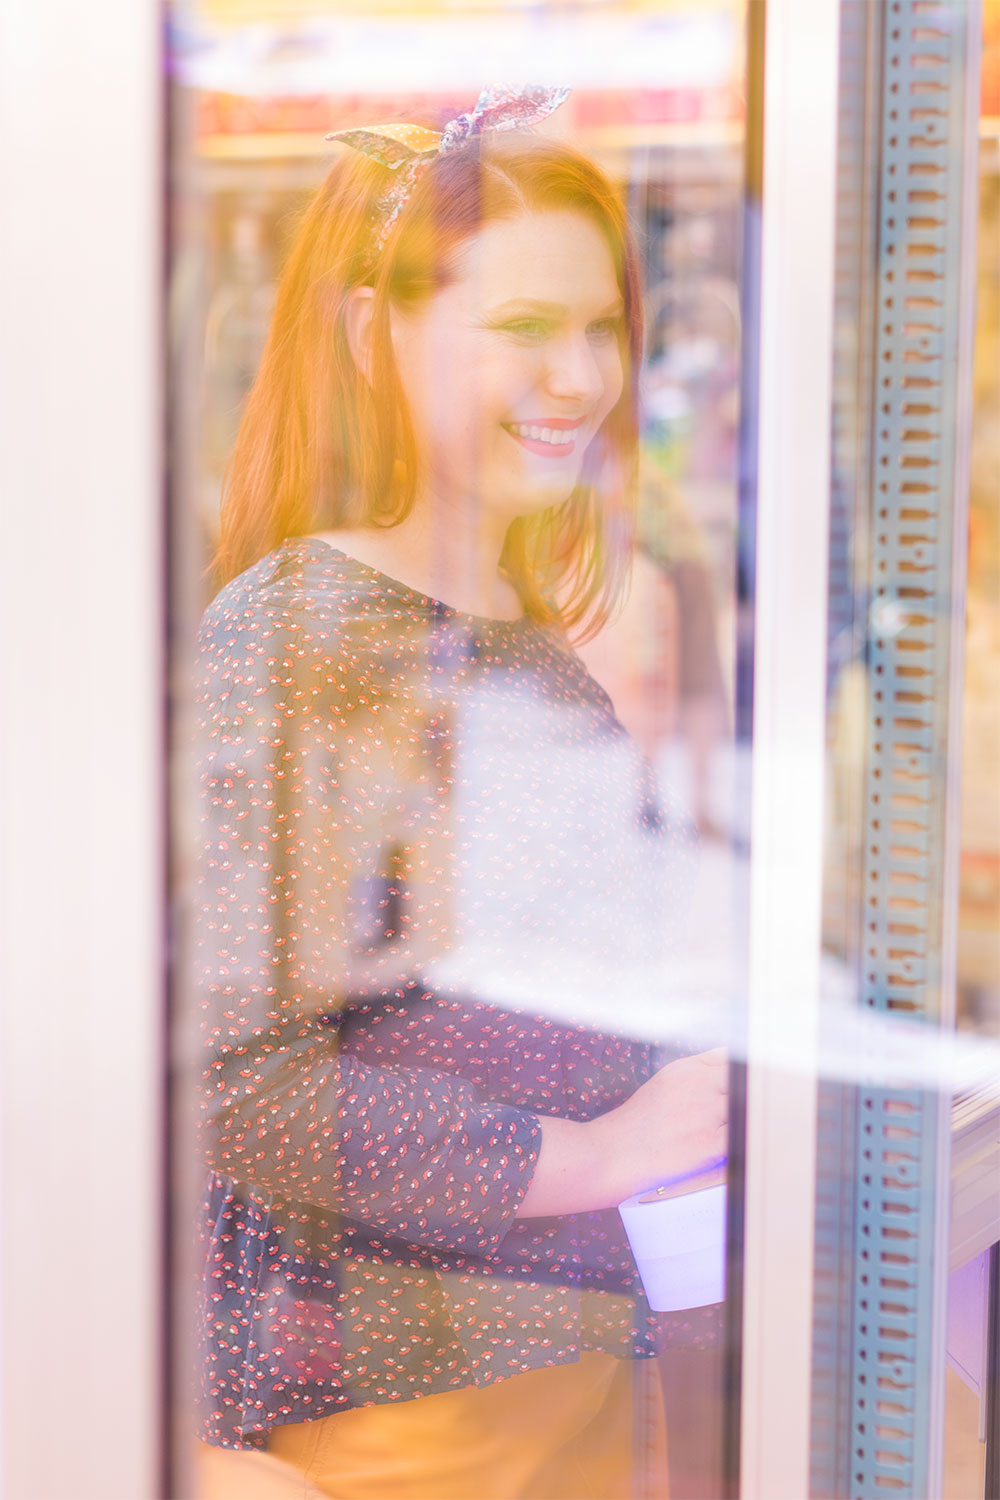 Sourire et look blouse et jupe derrière la vitre d'une machine à grappins de la fête foraine